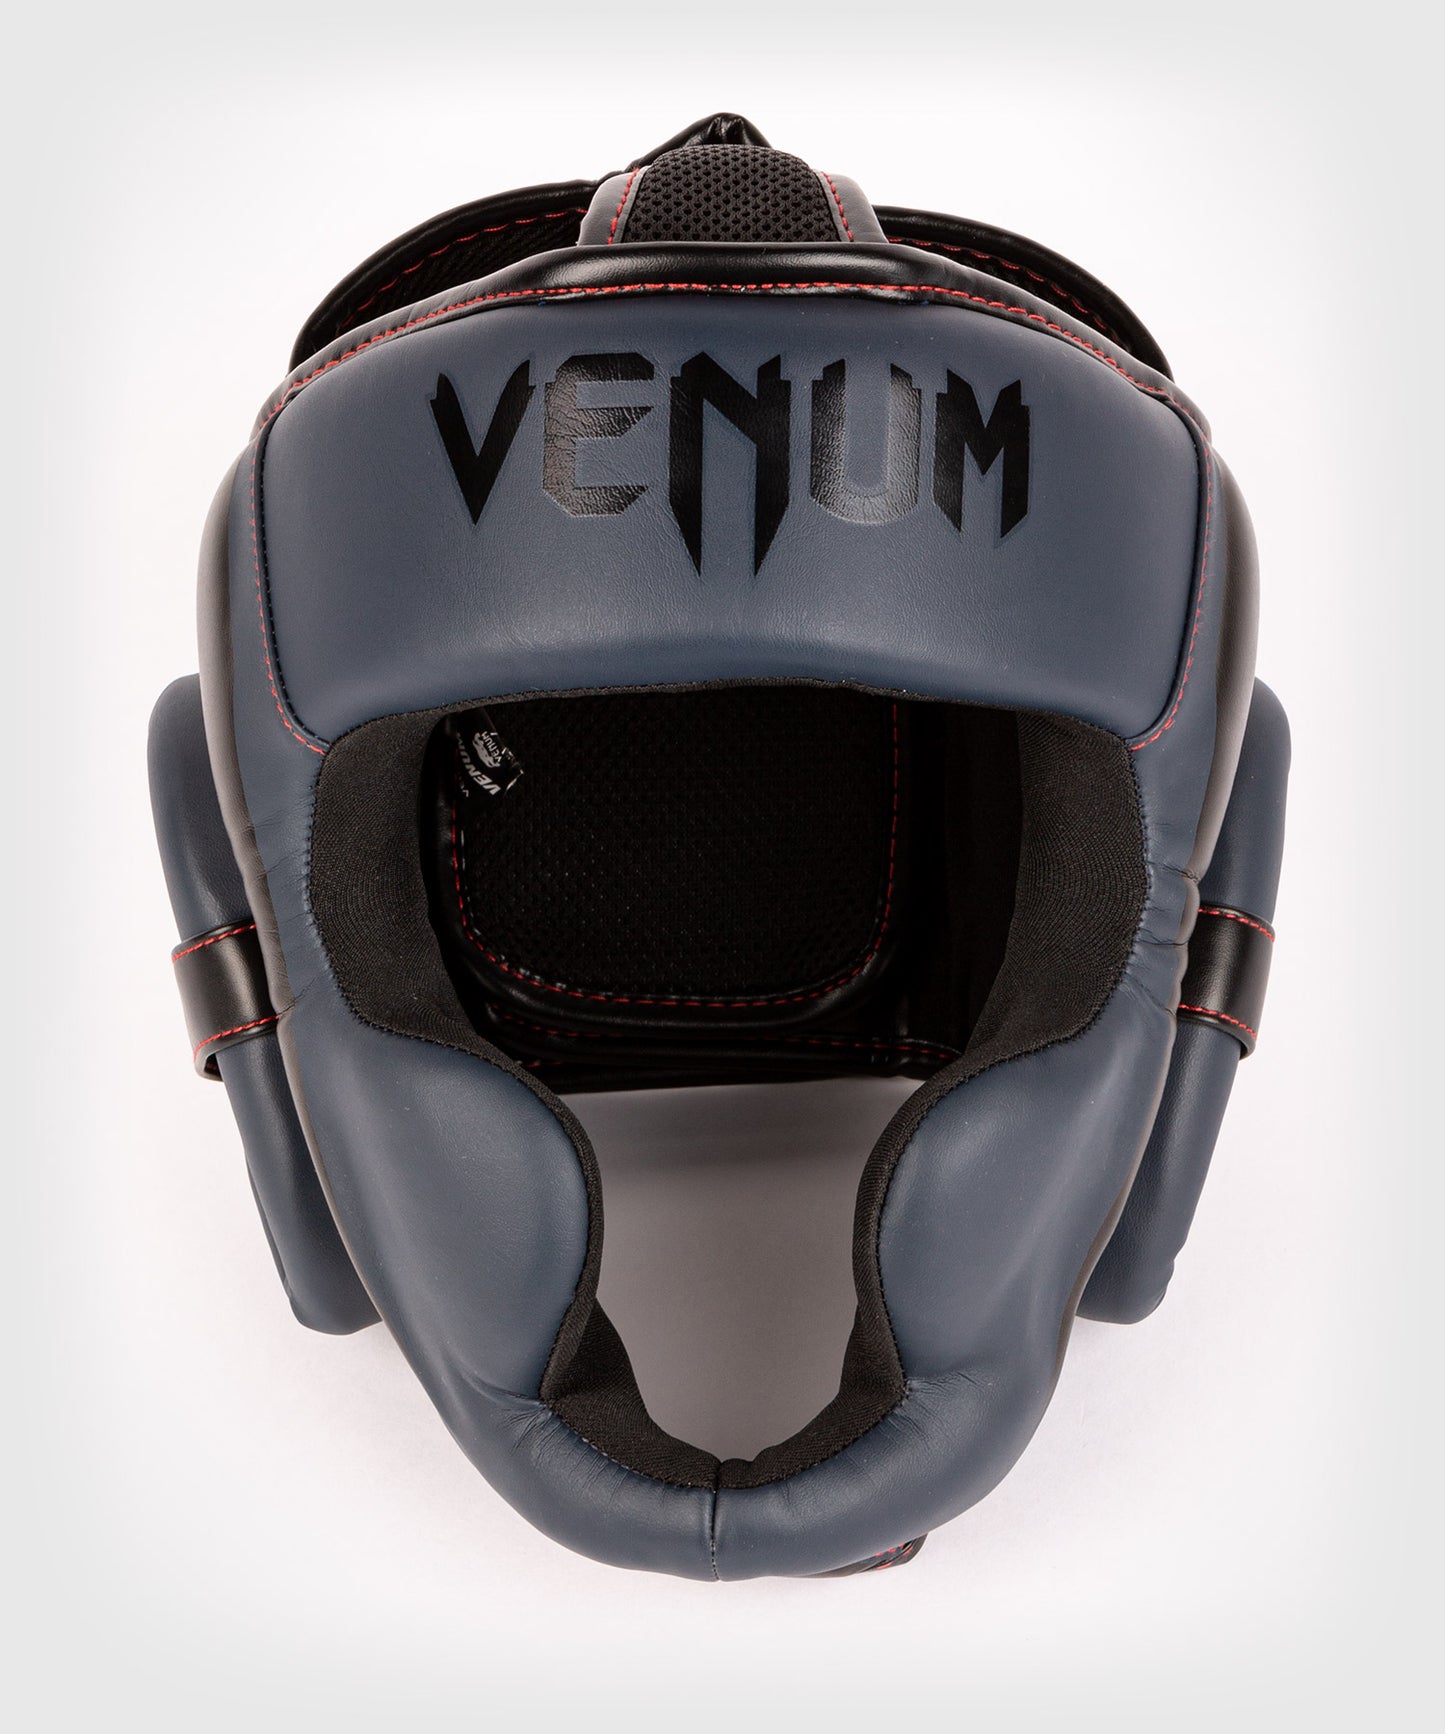 Venum Elite hoofdbeschermer -  Marine/Zwart-Rood